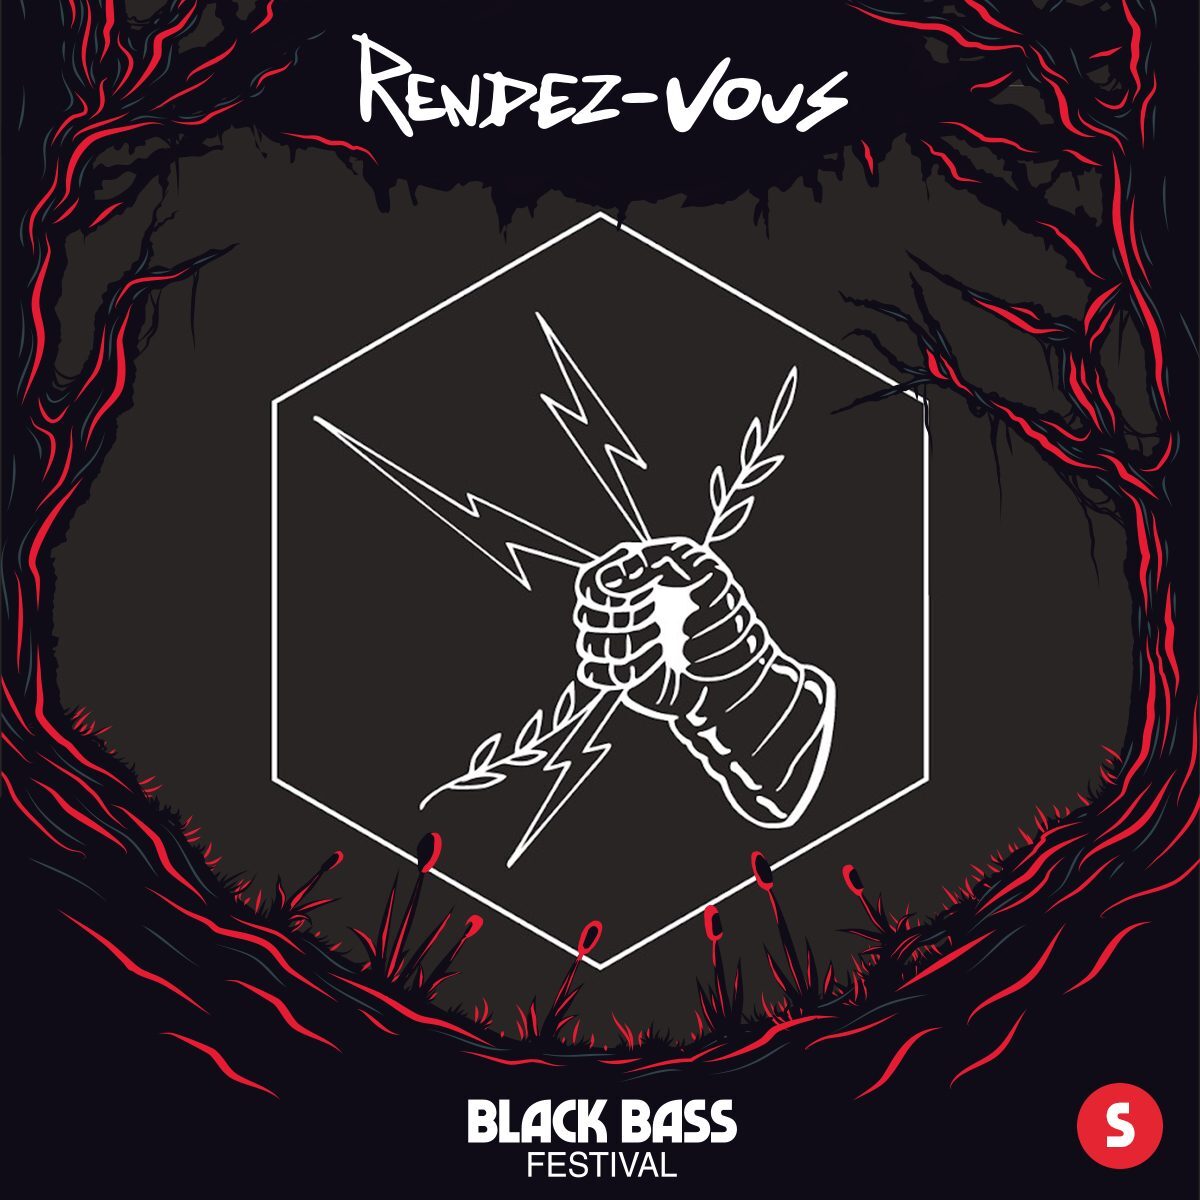 Rendez-Vous|Black Bass Festival